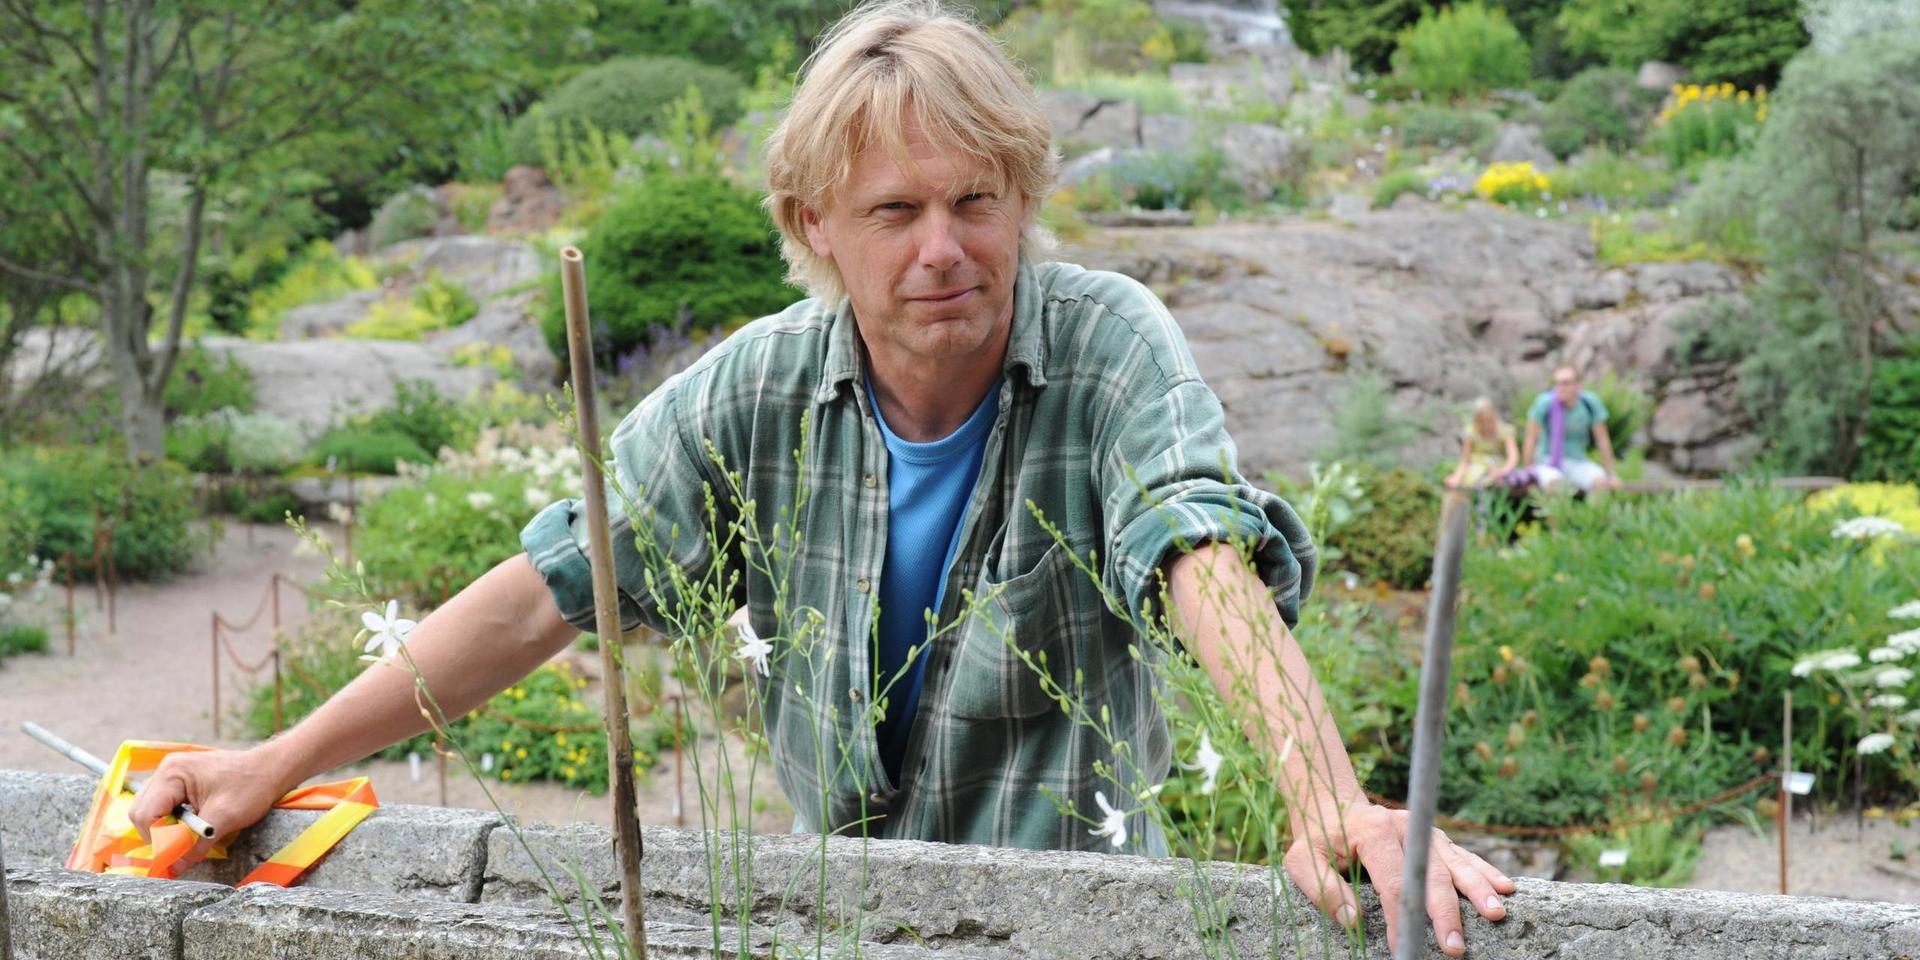 Mats Havström är botanist och enhetschef på Botaniska. Han har koll på vad som flyger i luften just nu.